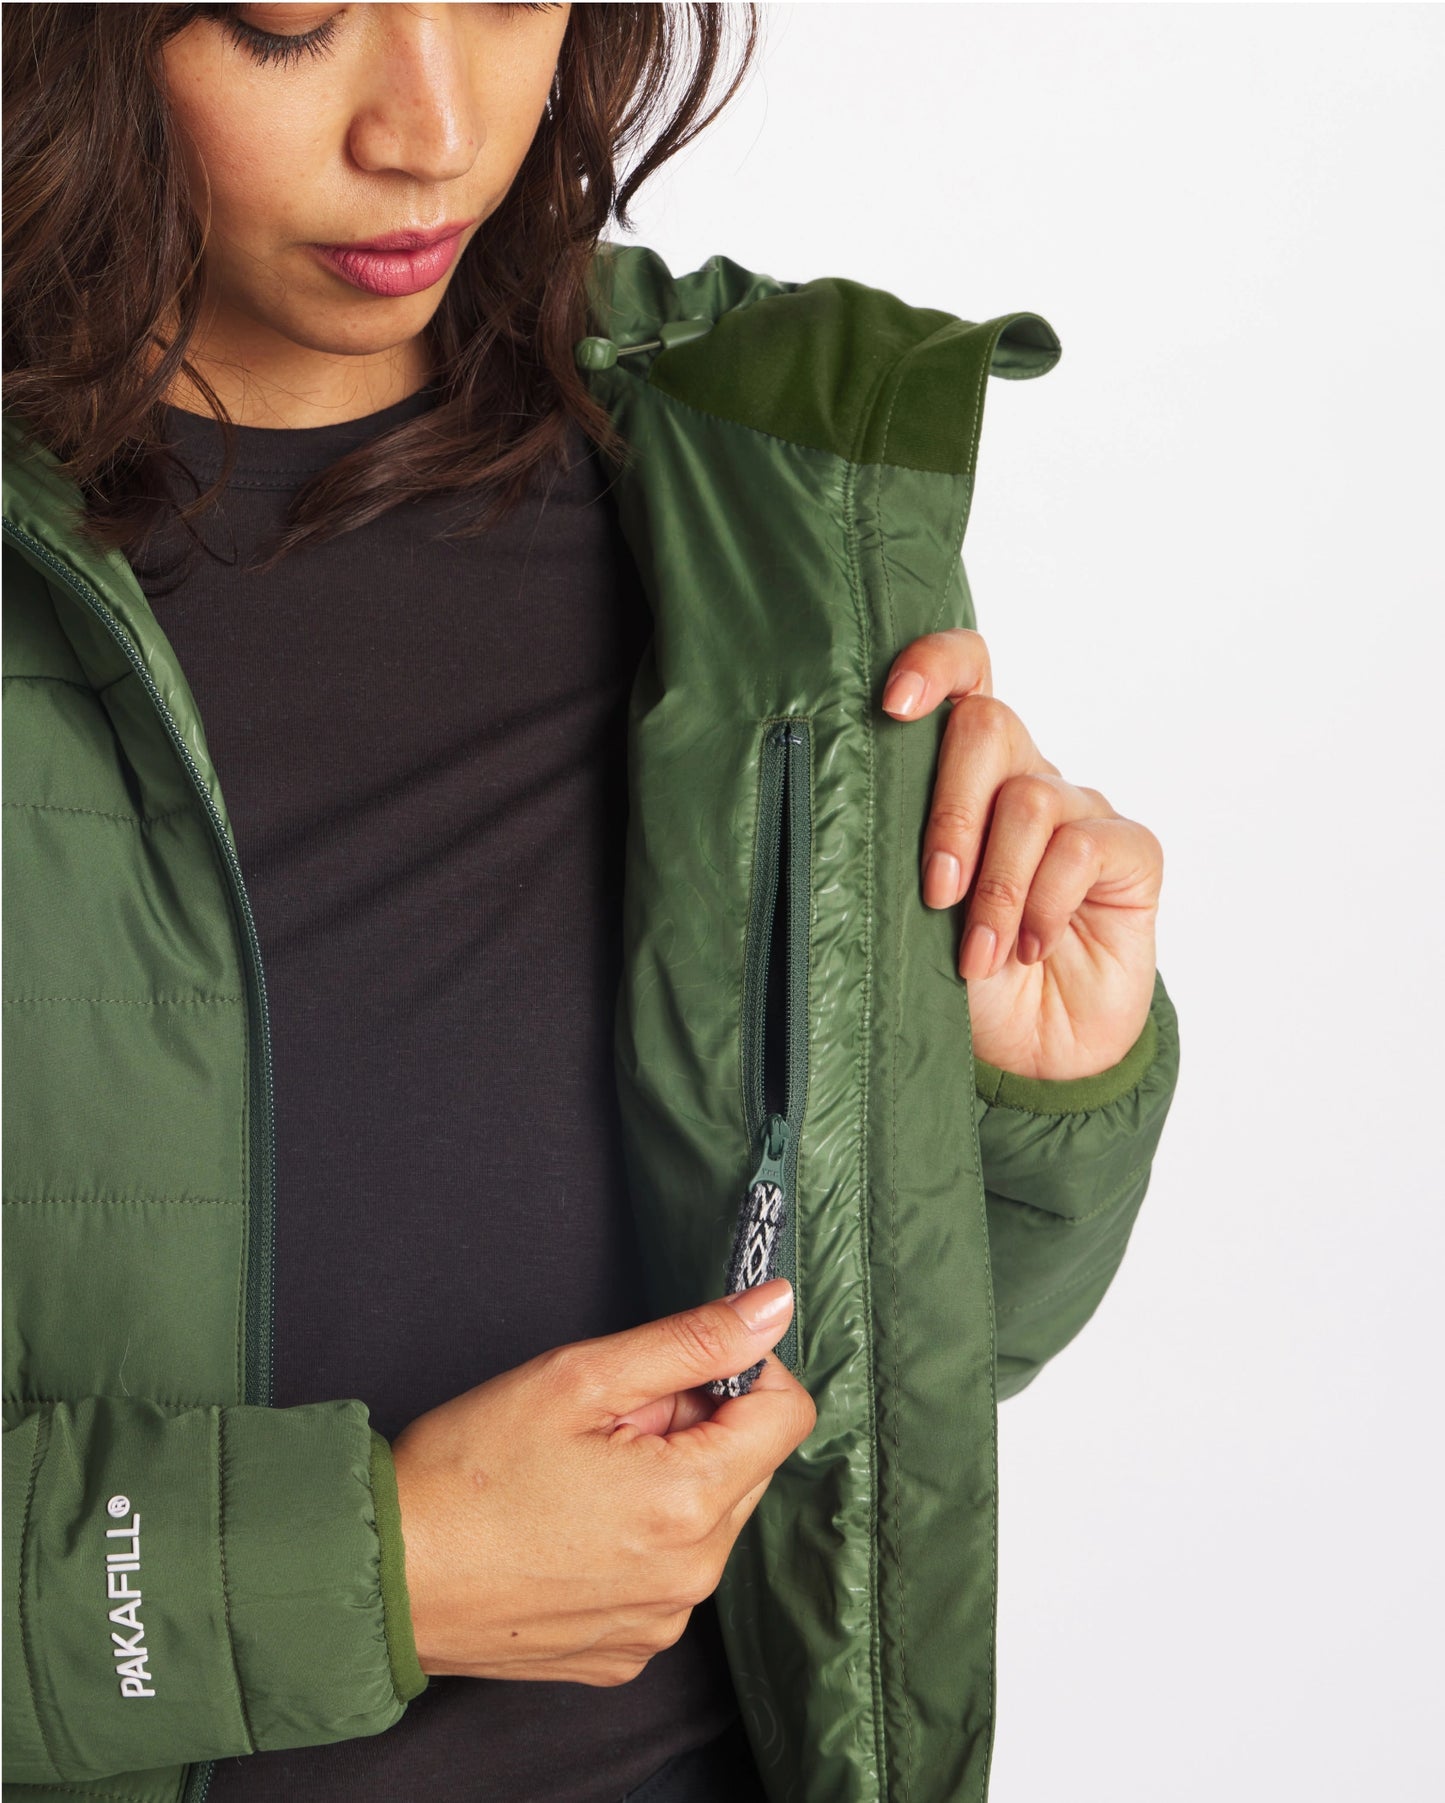 Green womens puffer jacket with interior zipper